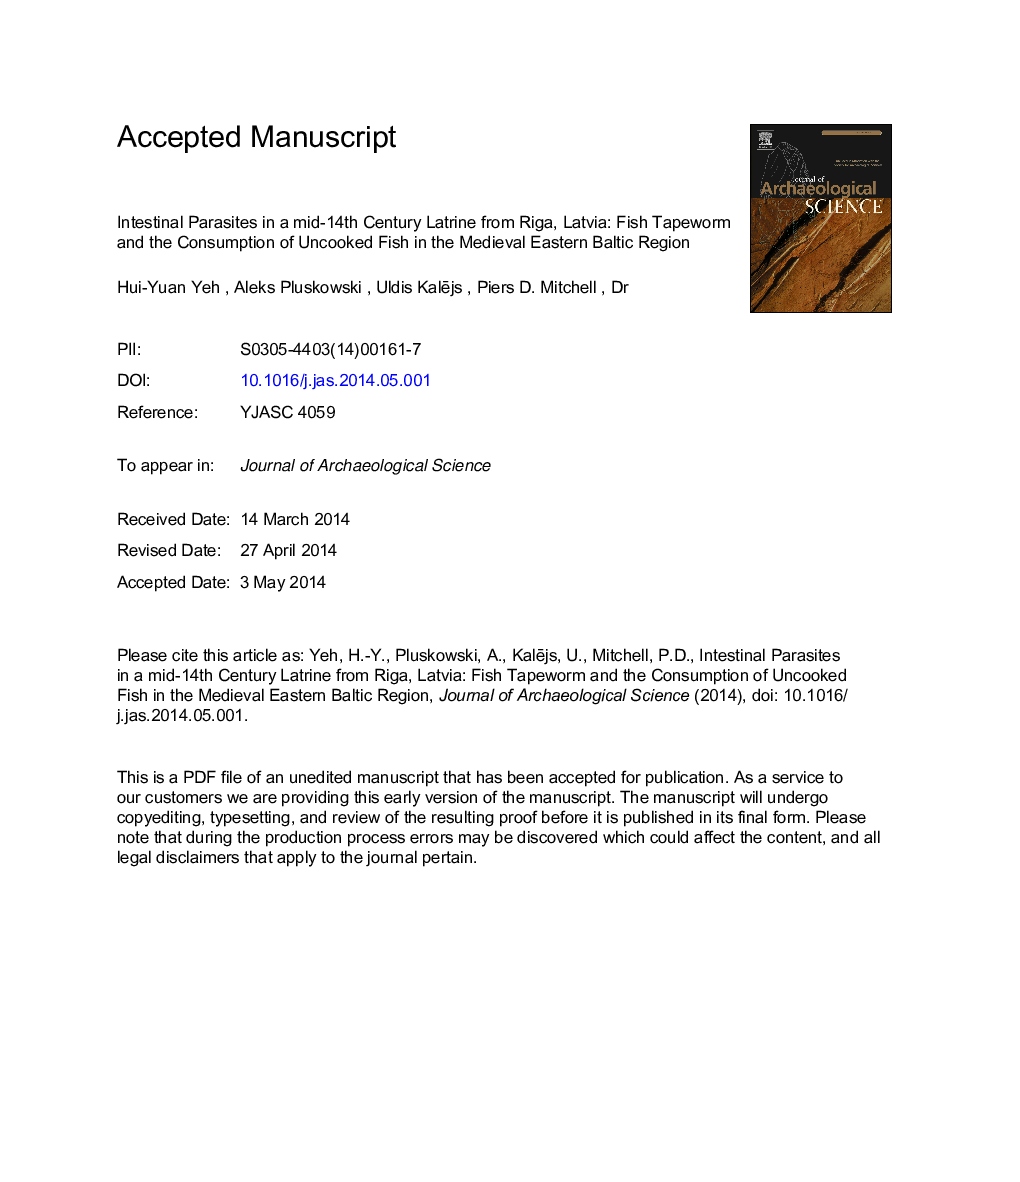 انگل روده ای در قرن نوزدهم میلادی از ریگا، لتونی: کرم قرمز ماهی و مصرف ماهی نیشکر در منطقه شرقی بالتیک قرون وسطی 